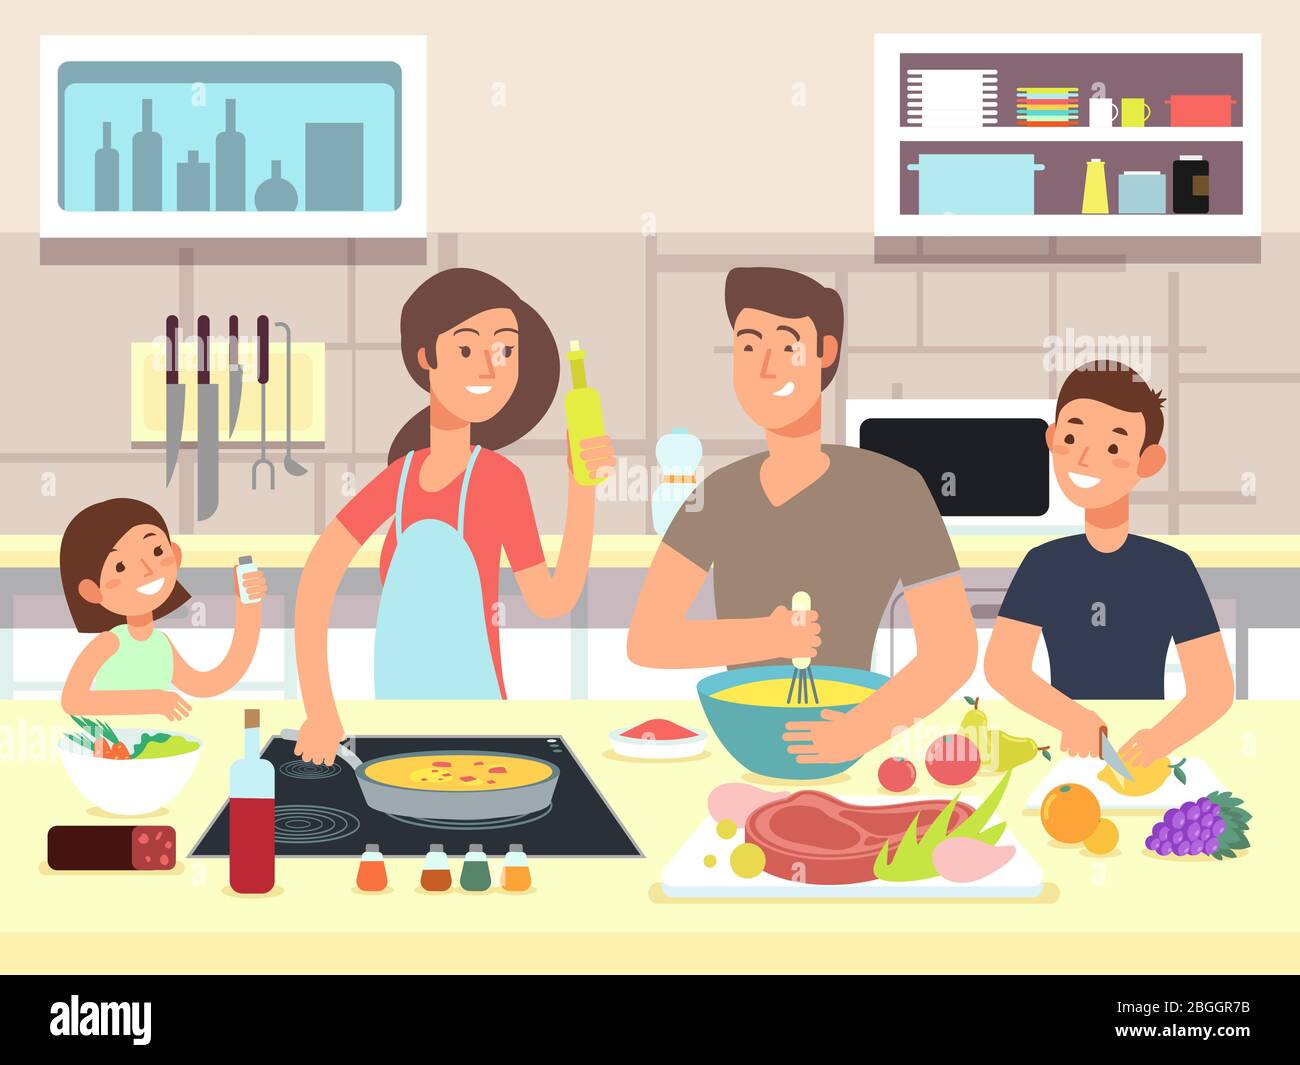 Bonne cuisine familiale. Mère et père avec enfants cuisinent des plats dans la cuisine dessin vectoriel de dessin animé. Cuisine familiale, mère et père sur la cuisine Illustration de Vecteur